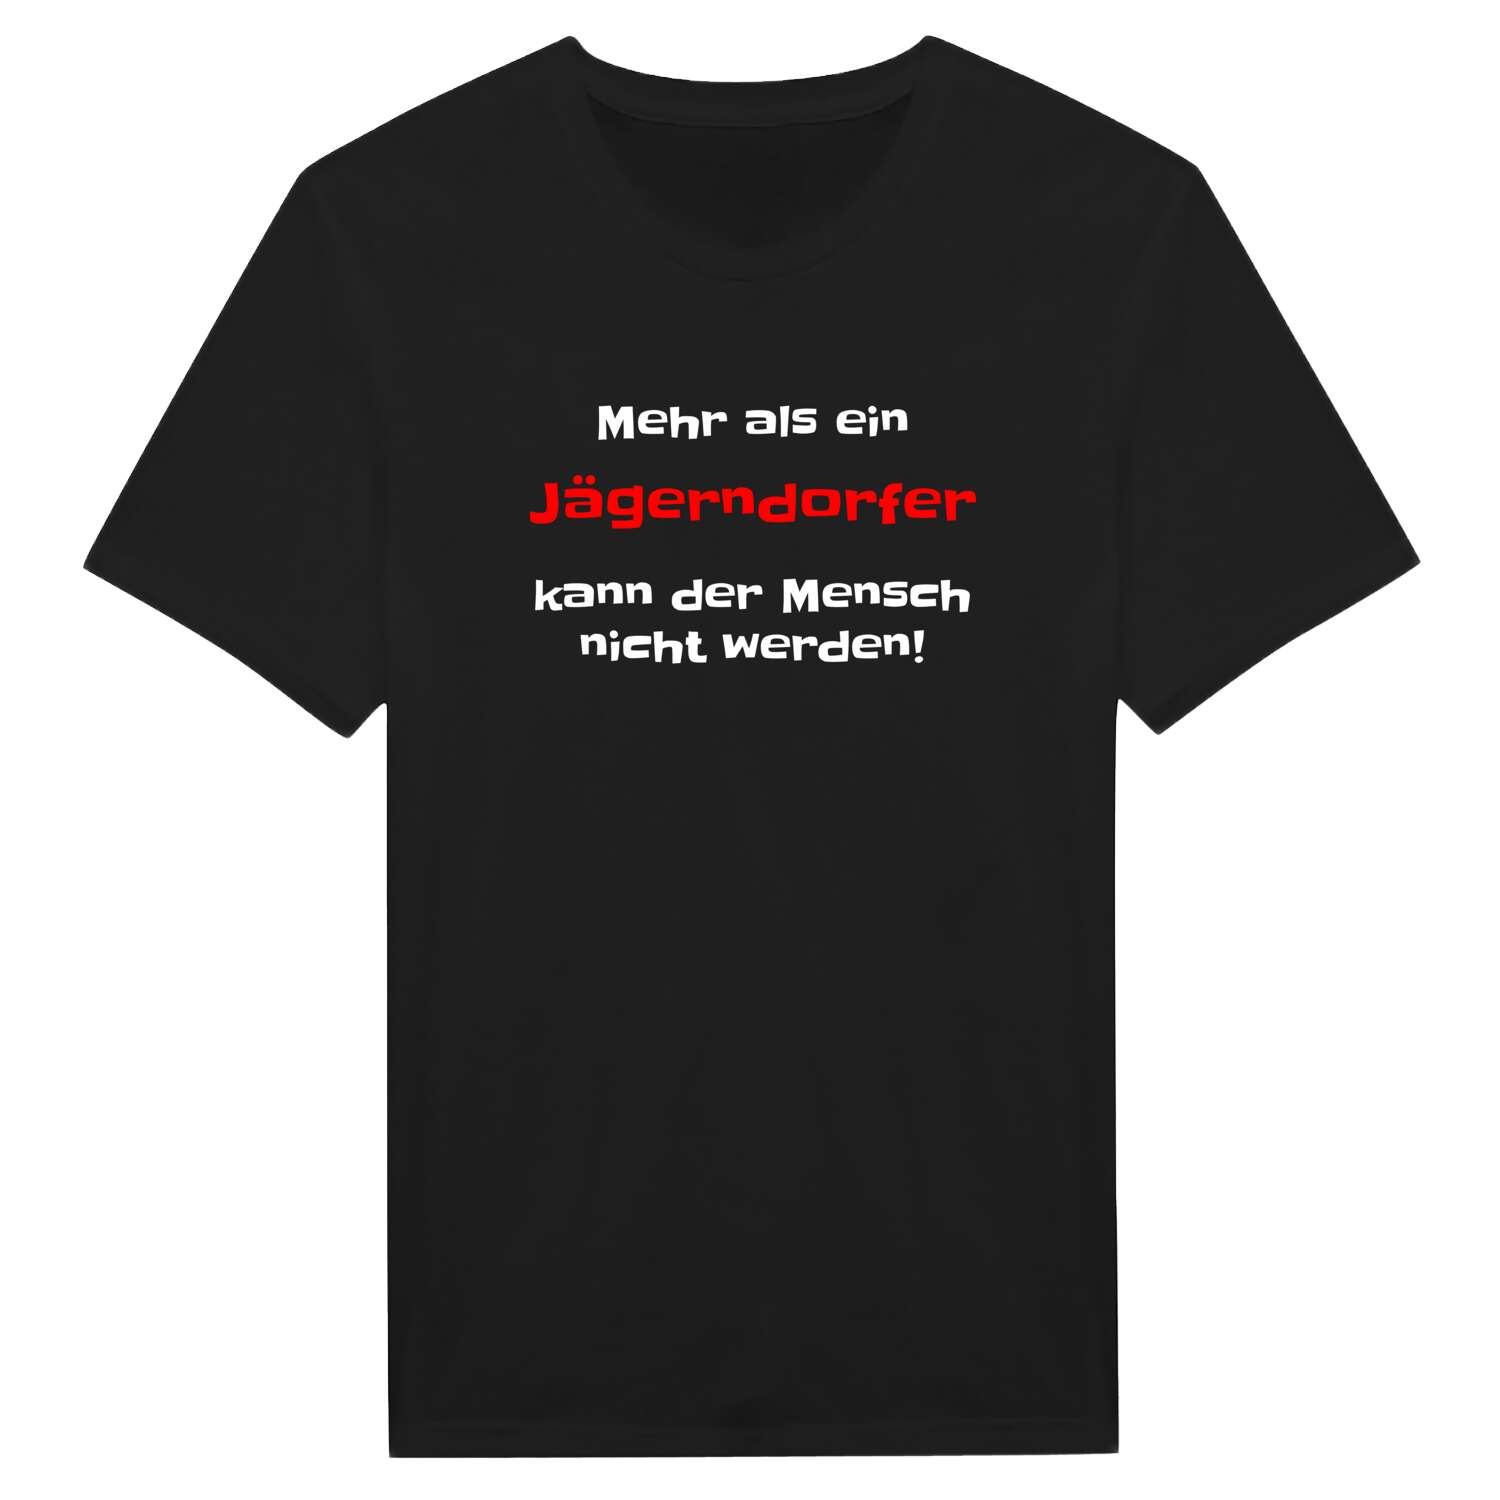 Jägerndorf T-Shirt »Mehr als ein«